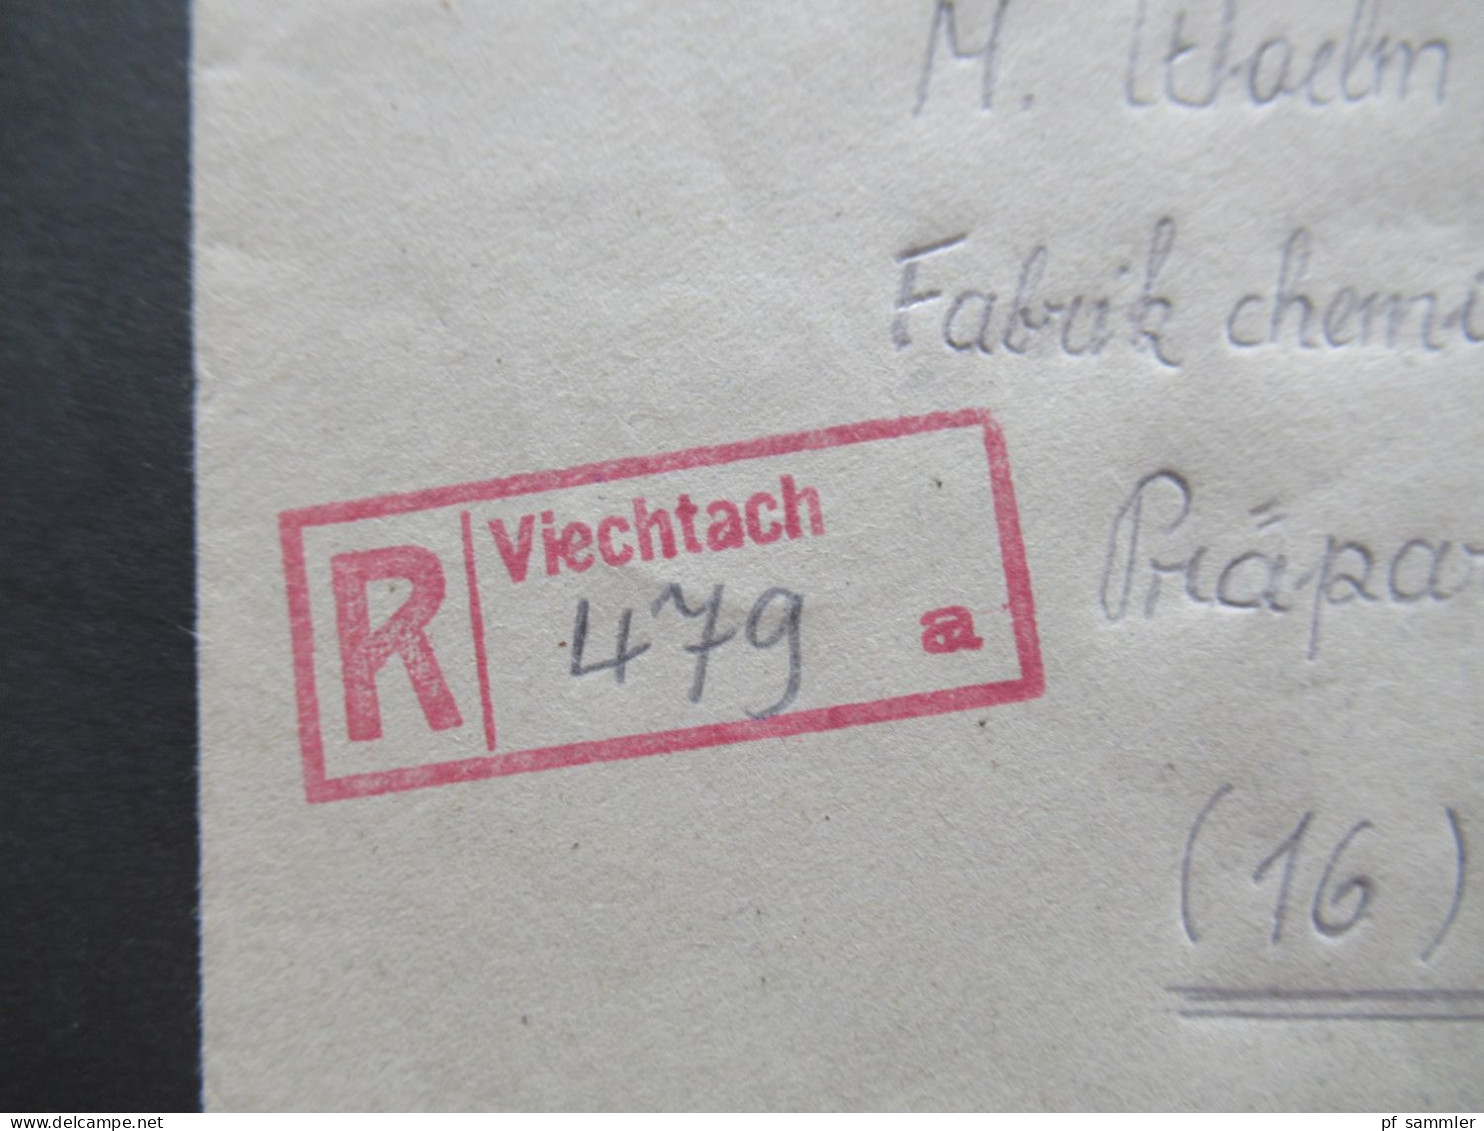 1948 Netzaufdruck MiF Nr.51 II EF Einschreiben Not R-Zettel Stempel Viechtach u. roter L2 Bitte quittiert zurück an SI